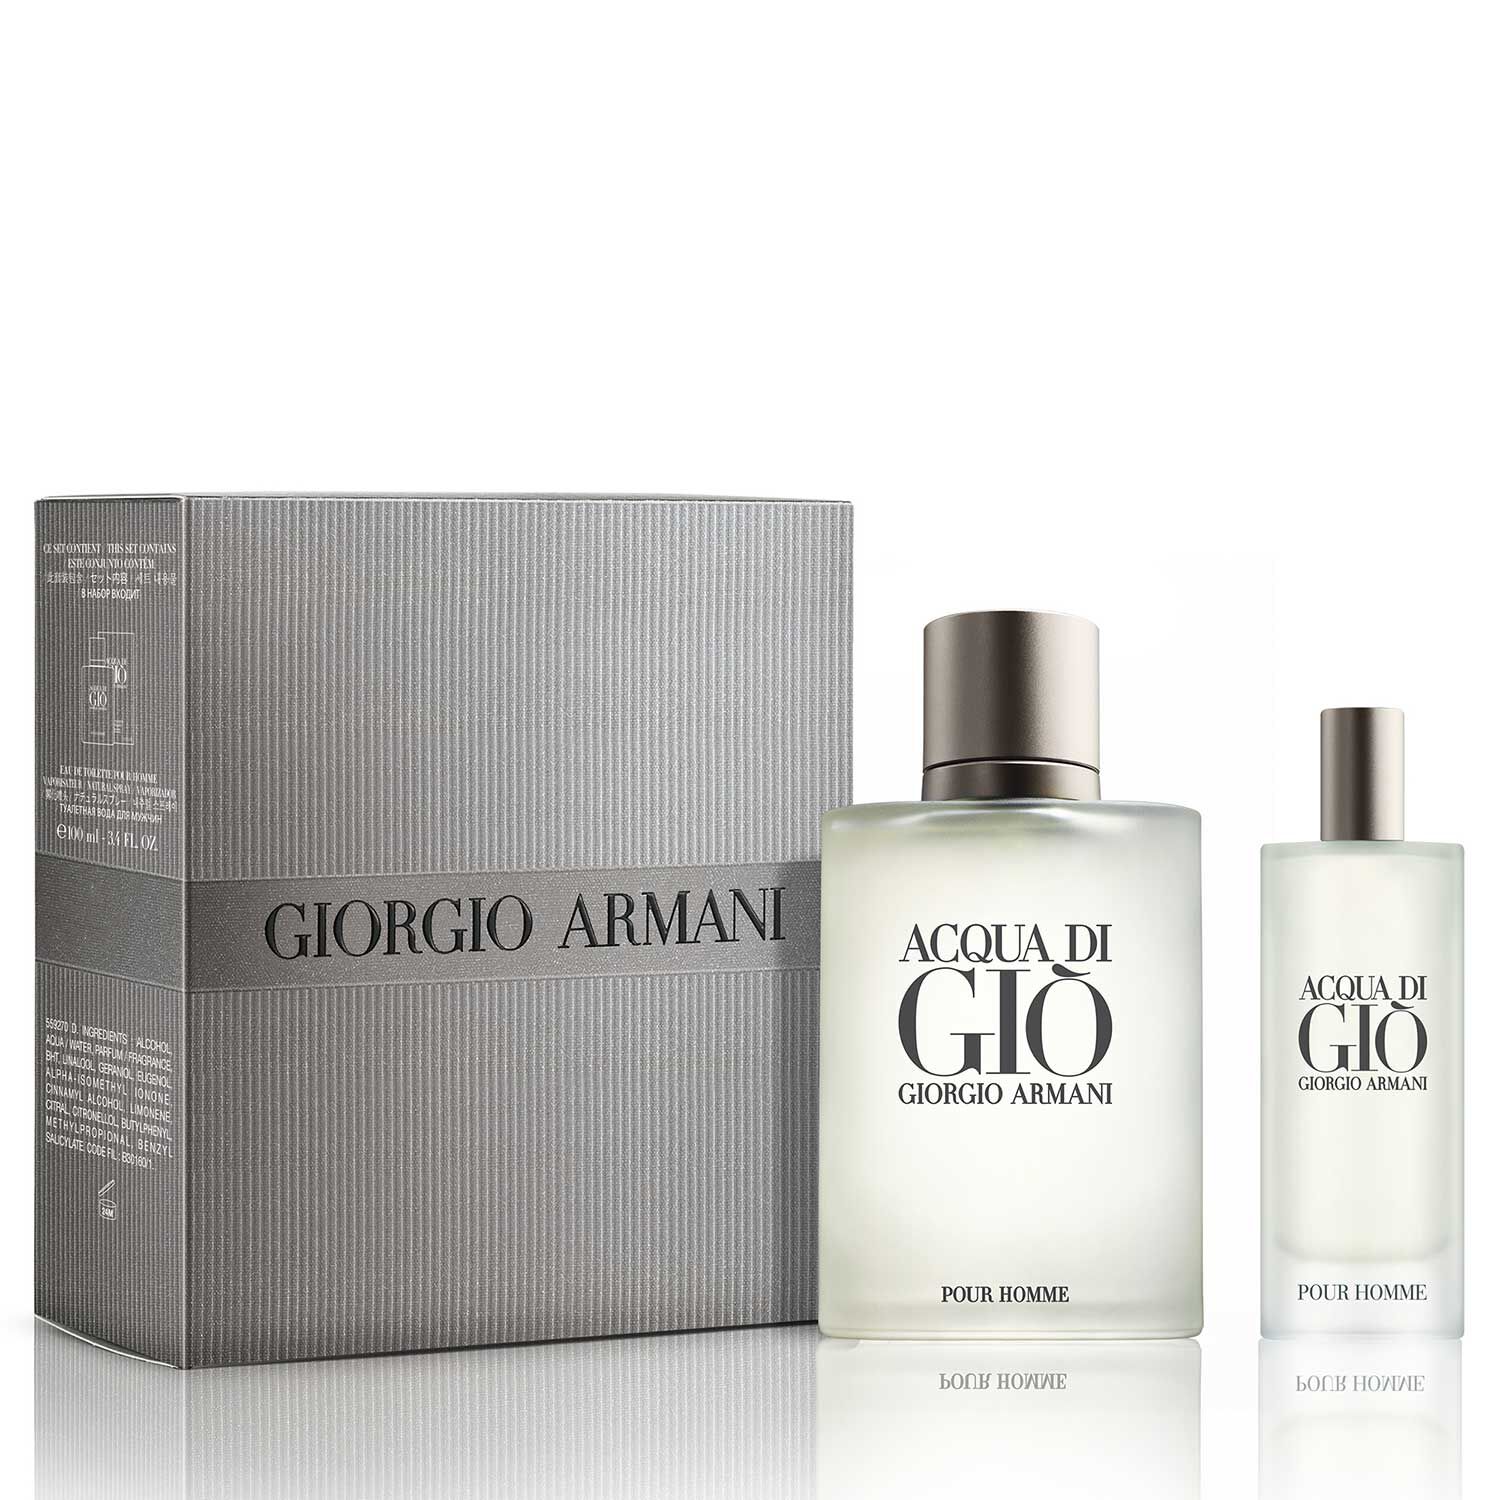 giorgio armani travel set